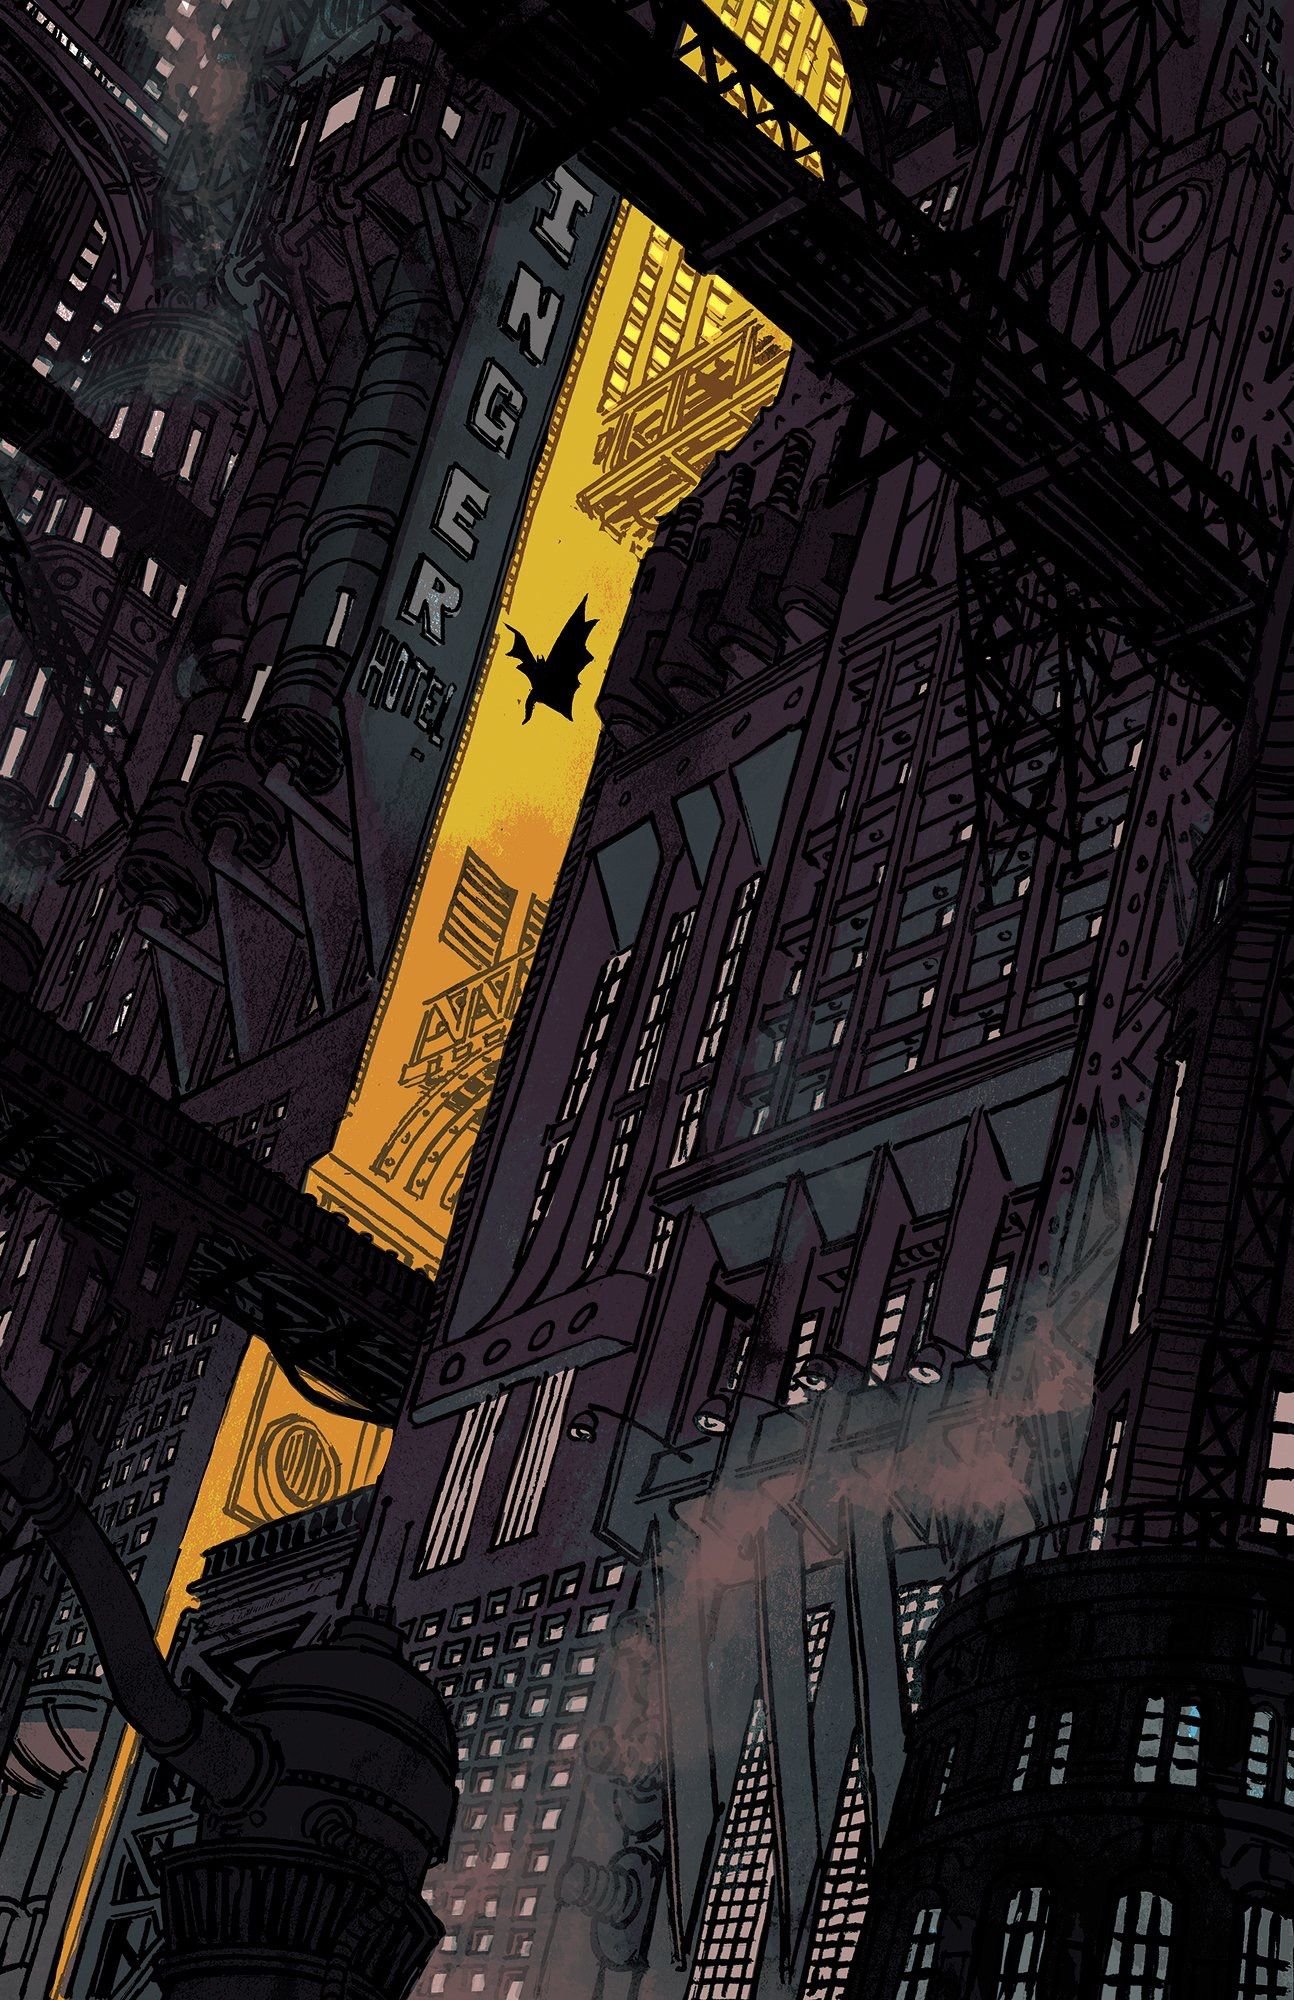 Batman Comic Cover Wallpaper